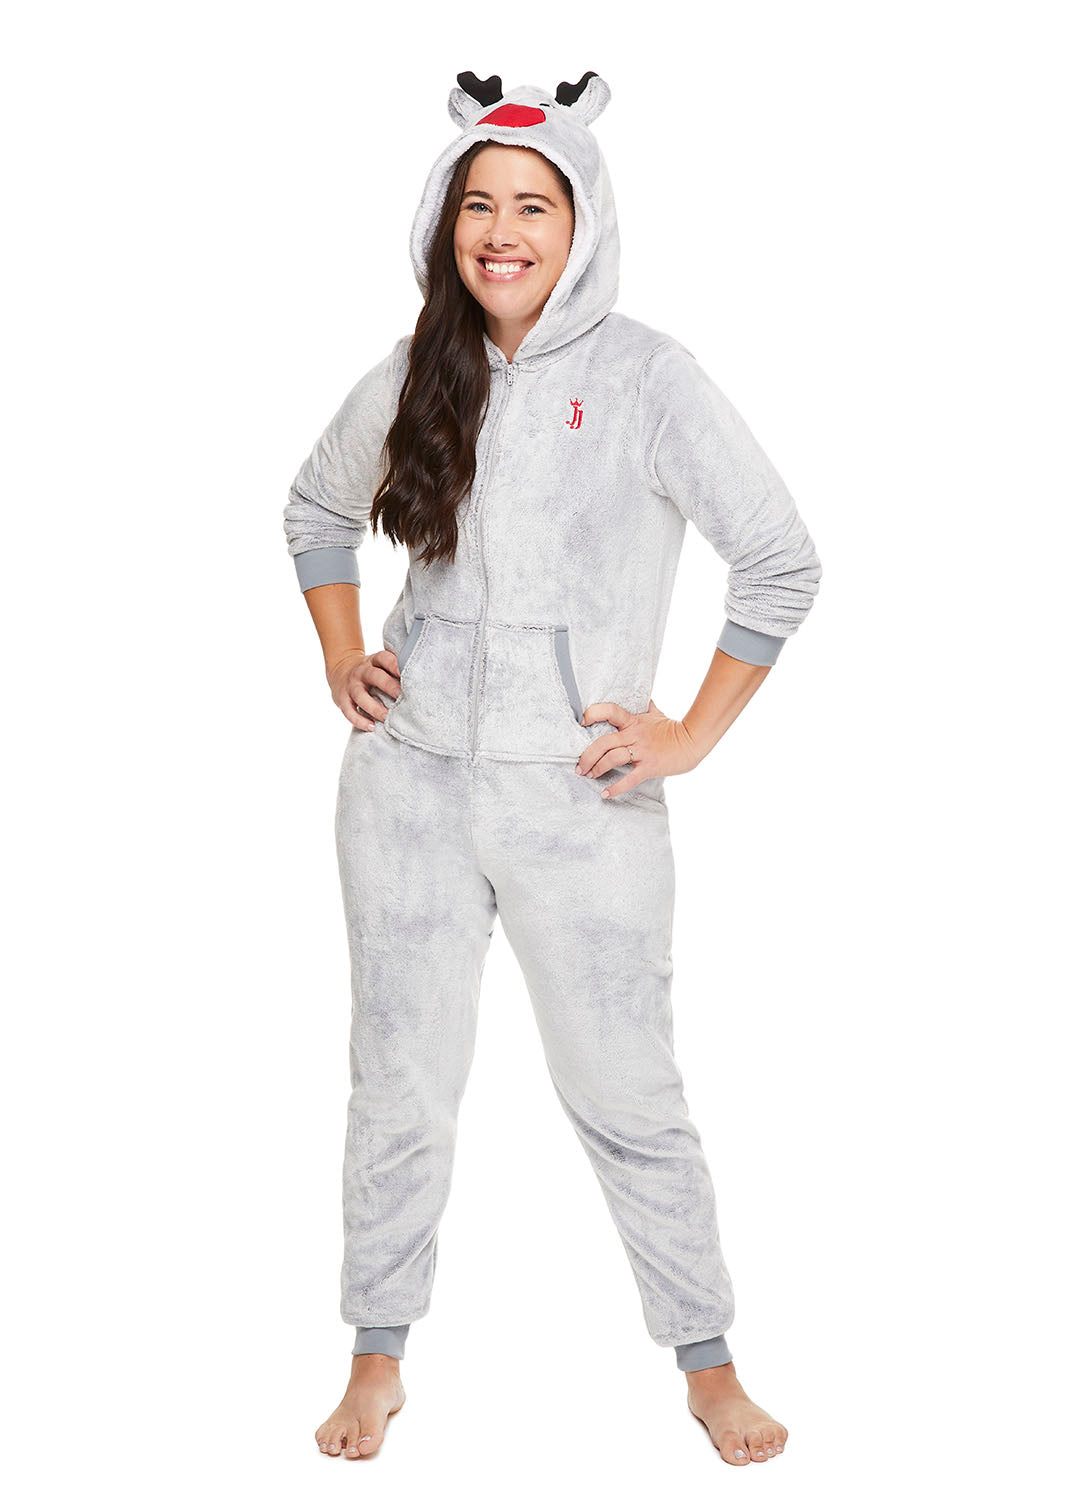 Woman smiling and wearing Grey Reindeer Sleepwear Onesie